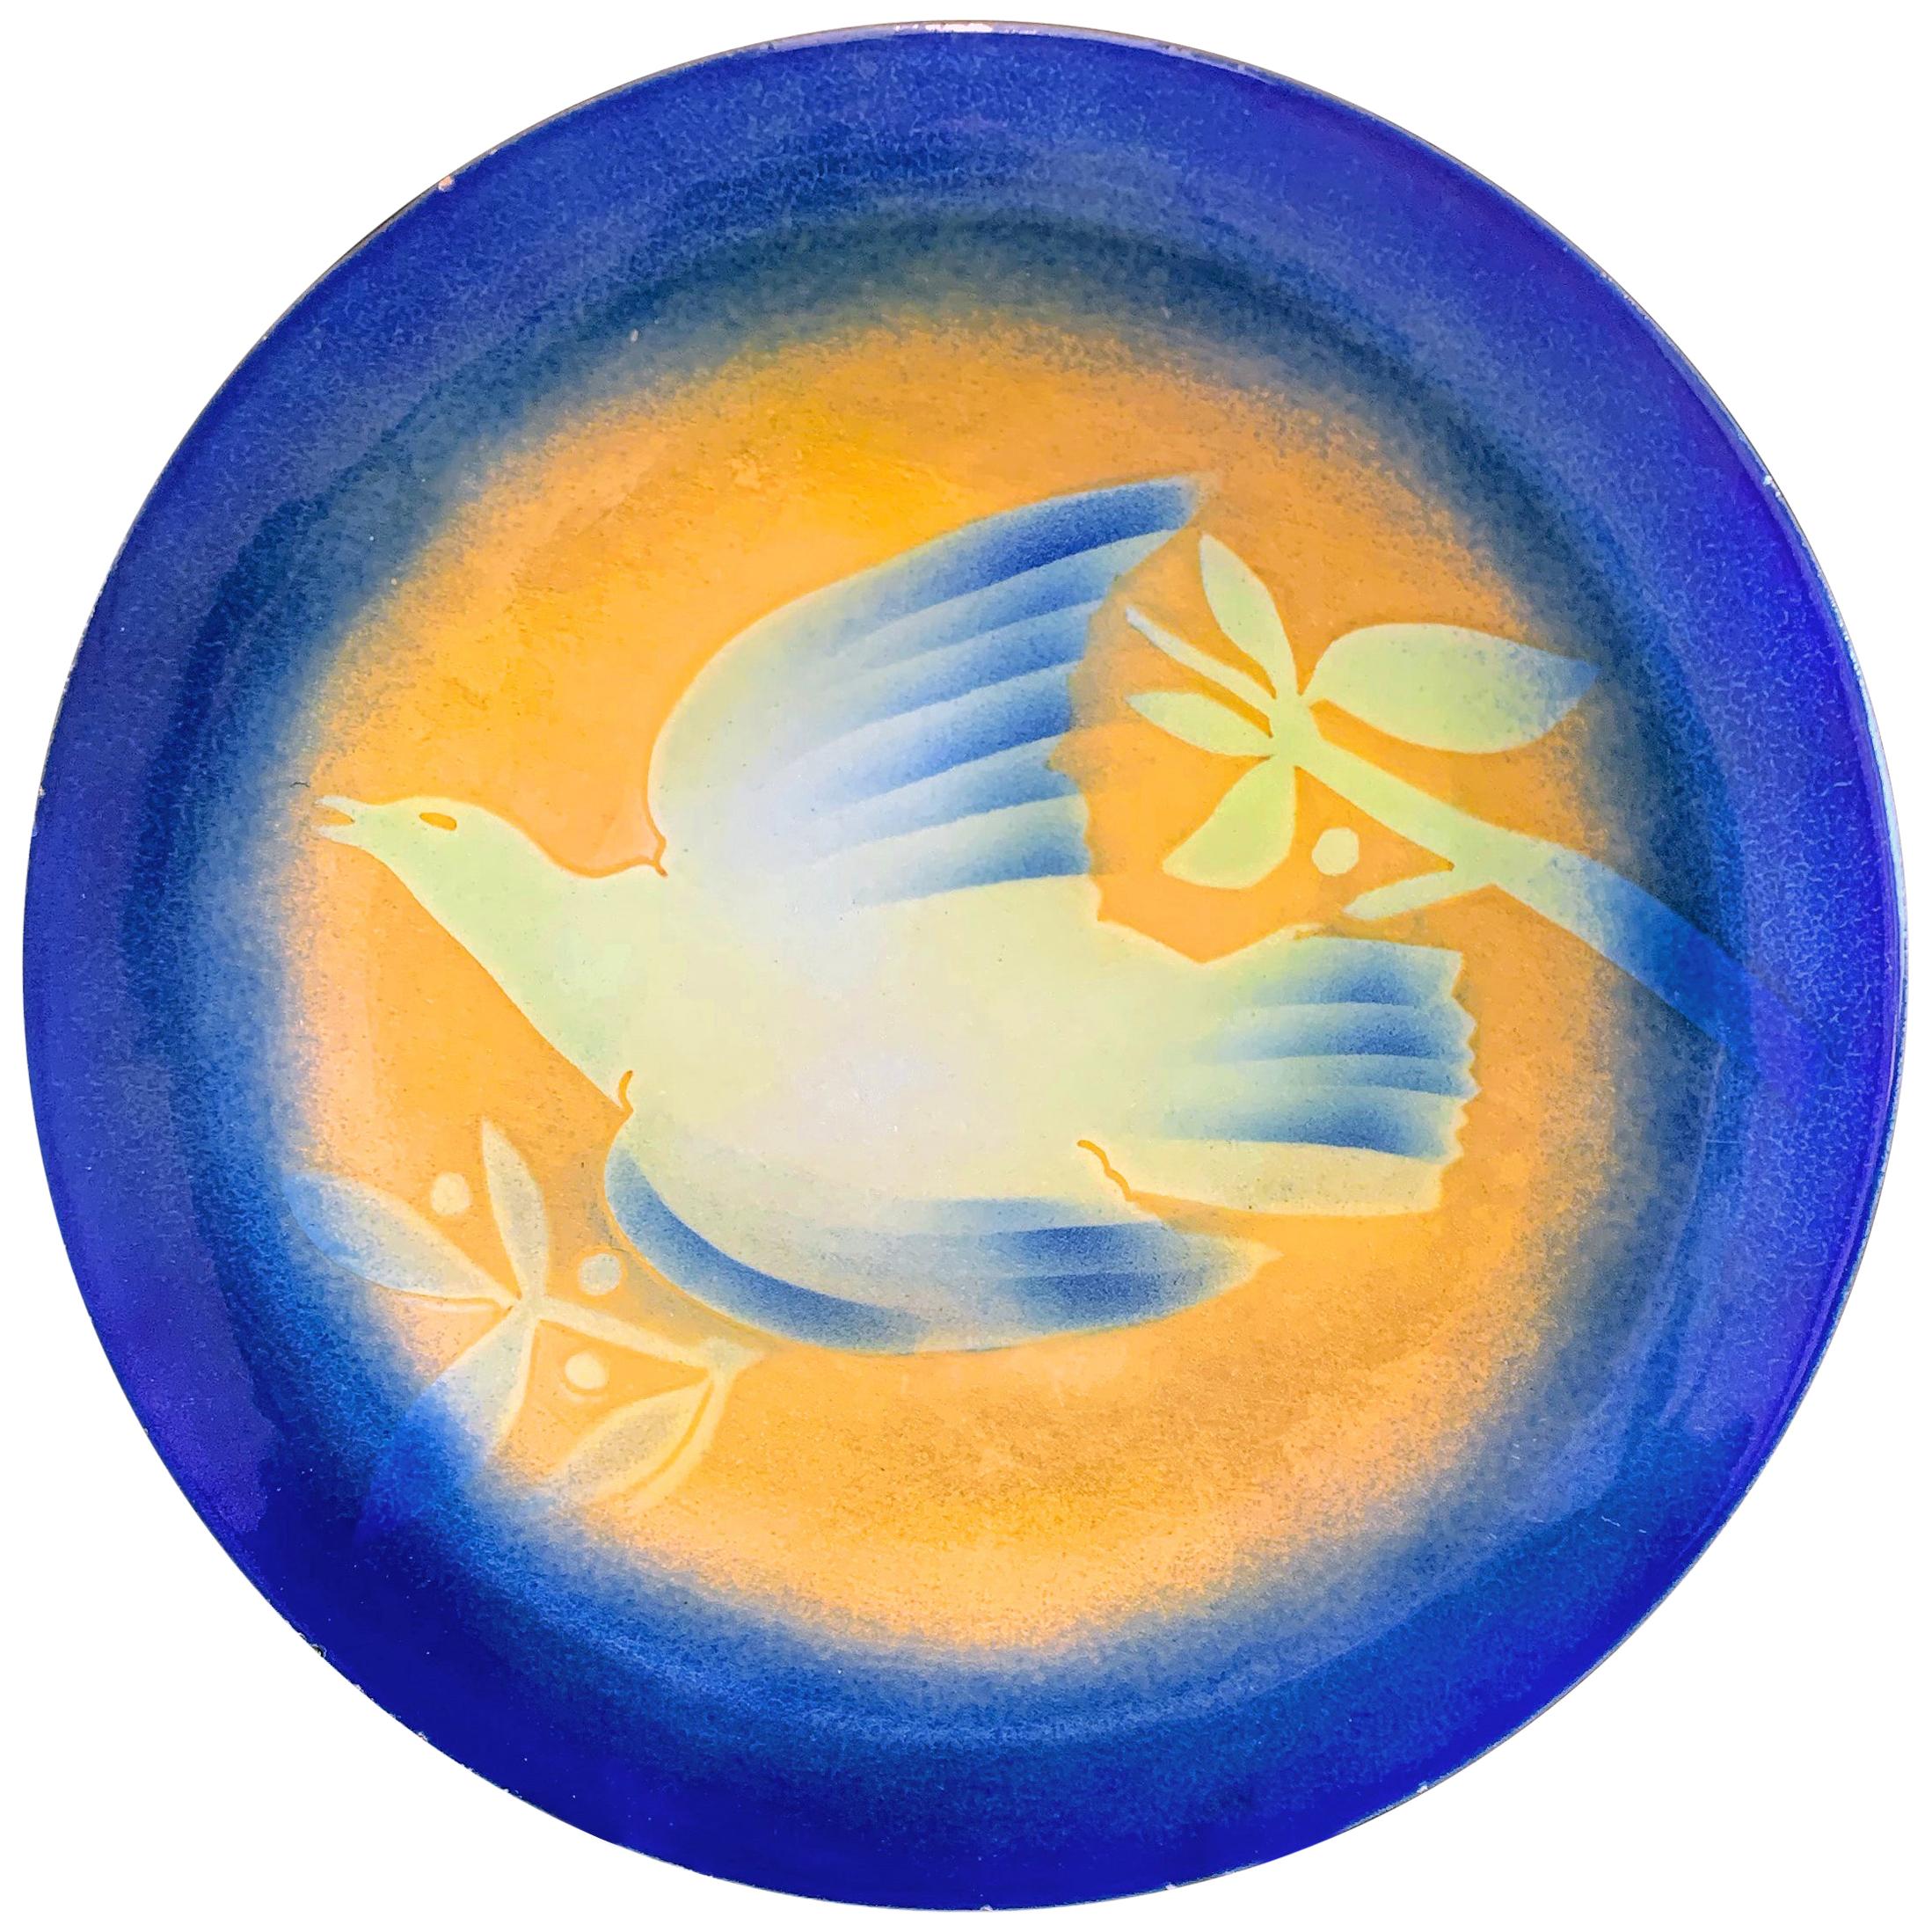 Chef-d'œuvre de l'Art déco « Dove in Flight » en céramique céruléenne et émail citron par Winter